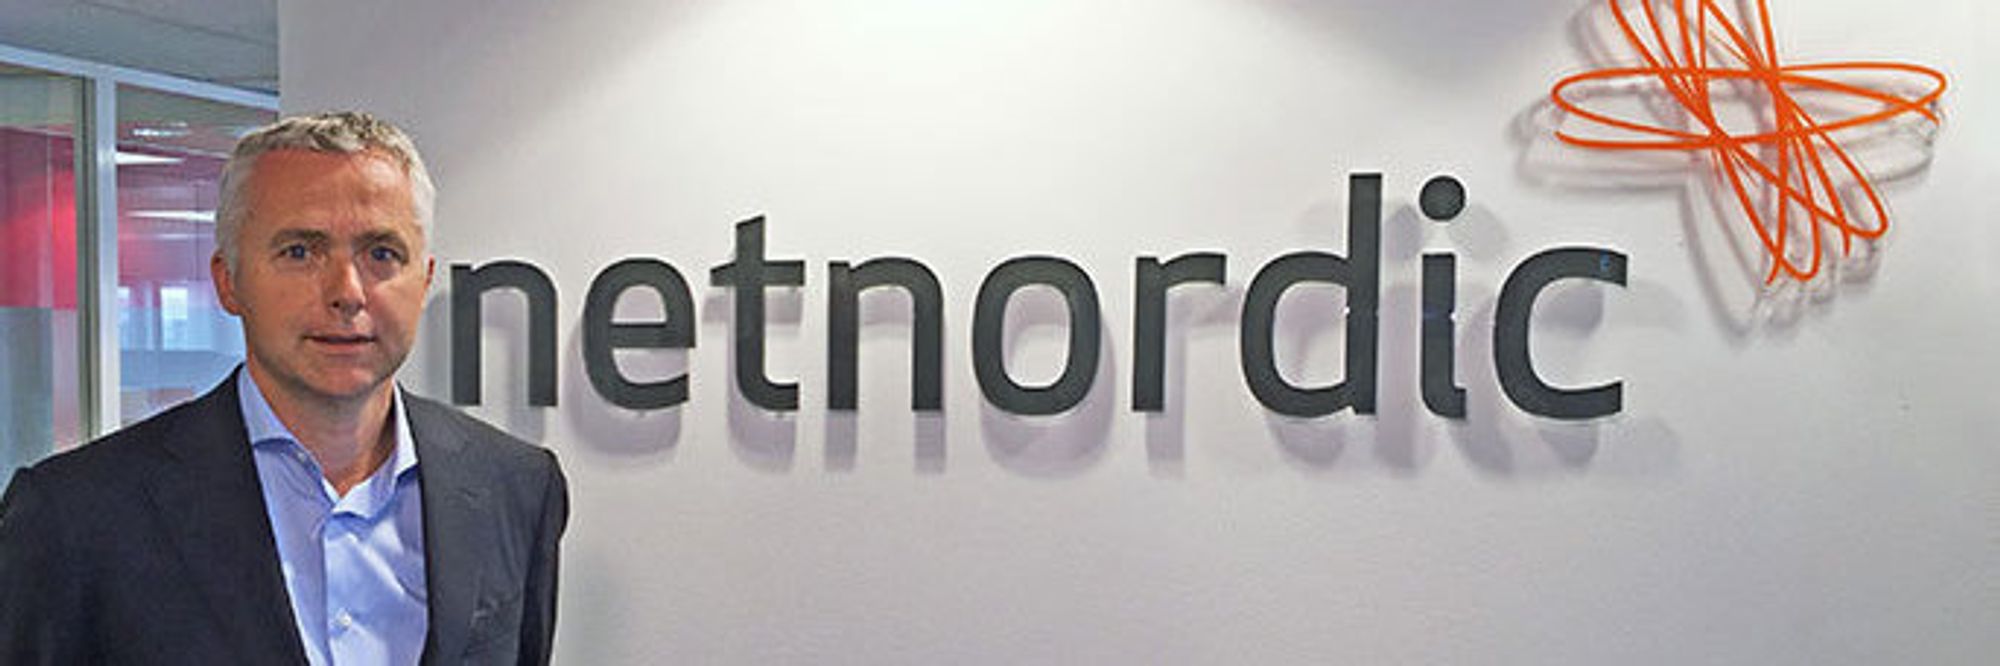 Administrerende direktør Jarl Øverby i Netnordic har kjøpt seks selskaper de siste årene, i tillegg til selv å ha blitt kjøpt av fondet Norvestor.